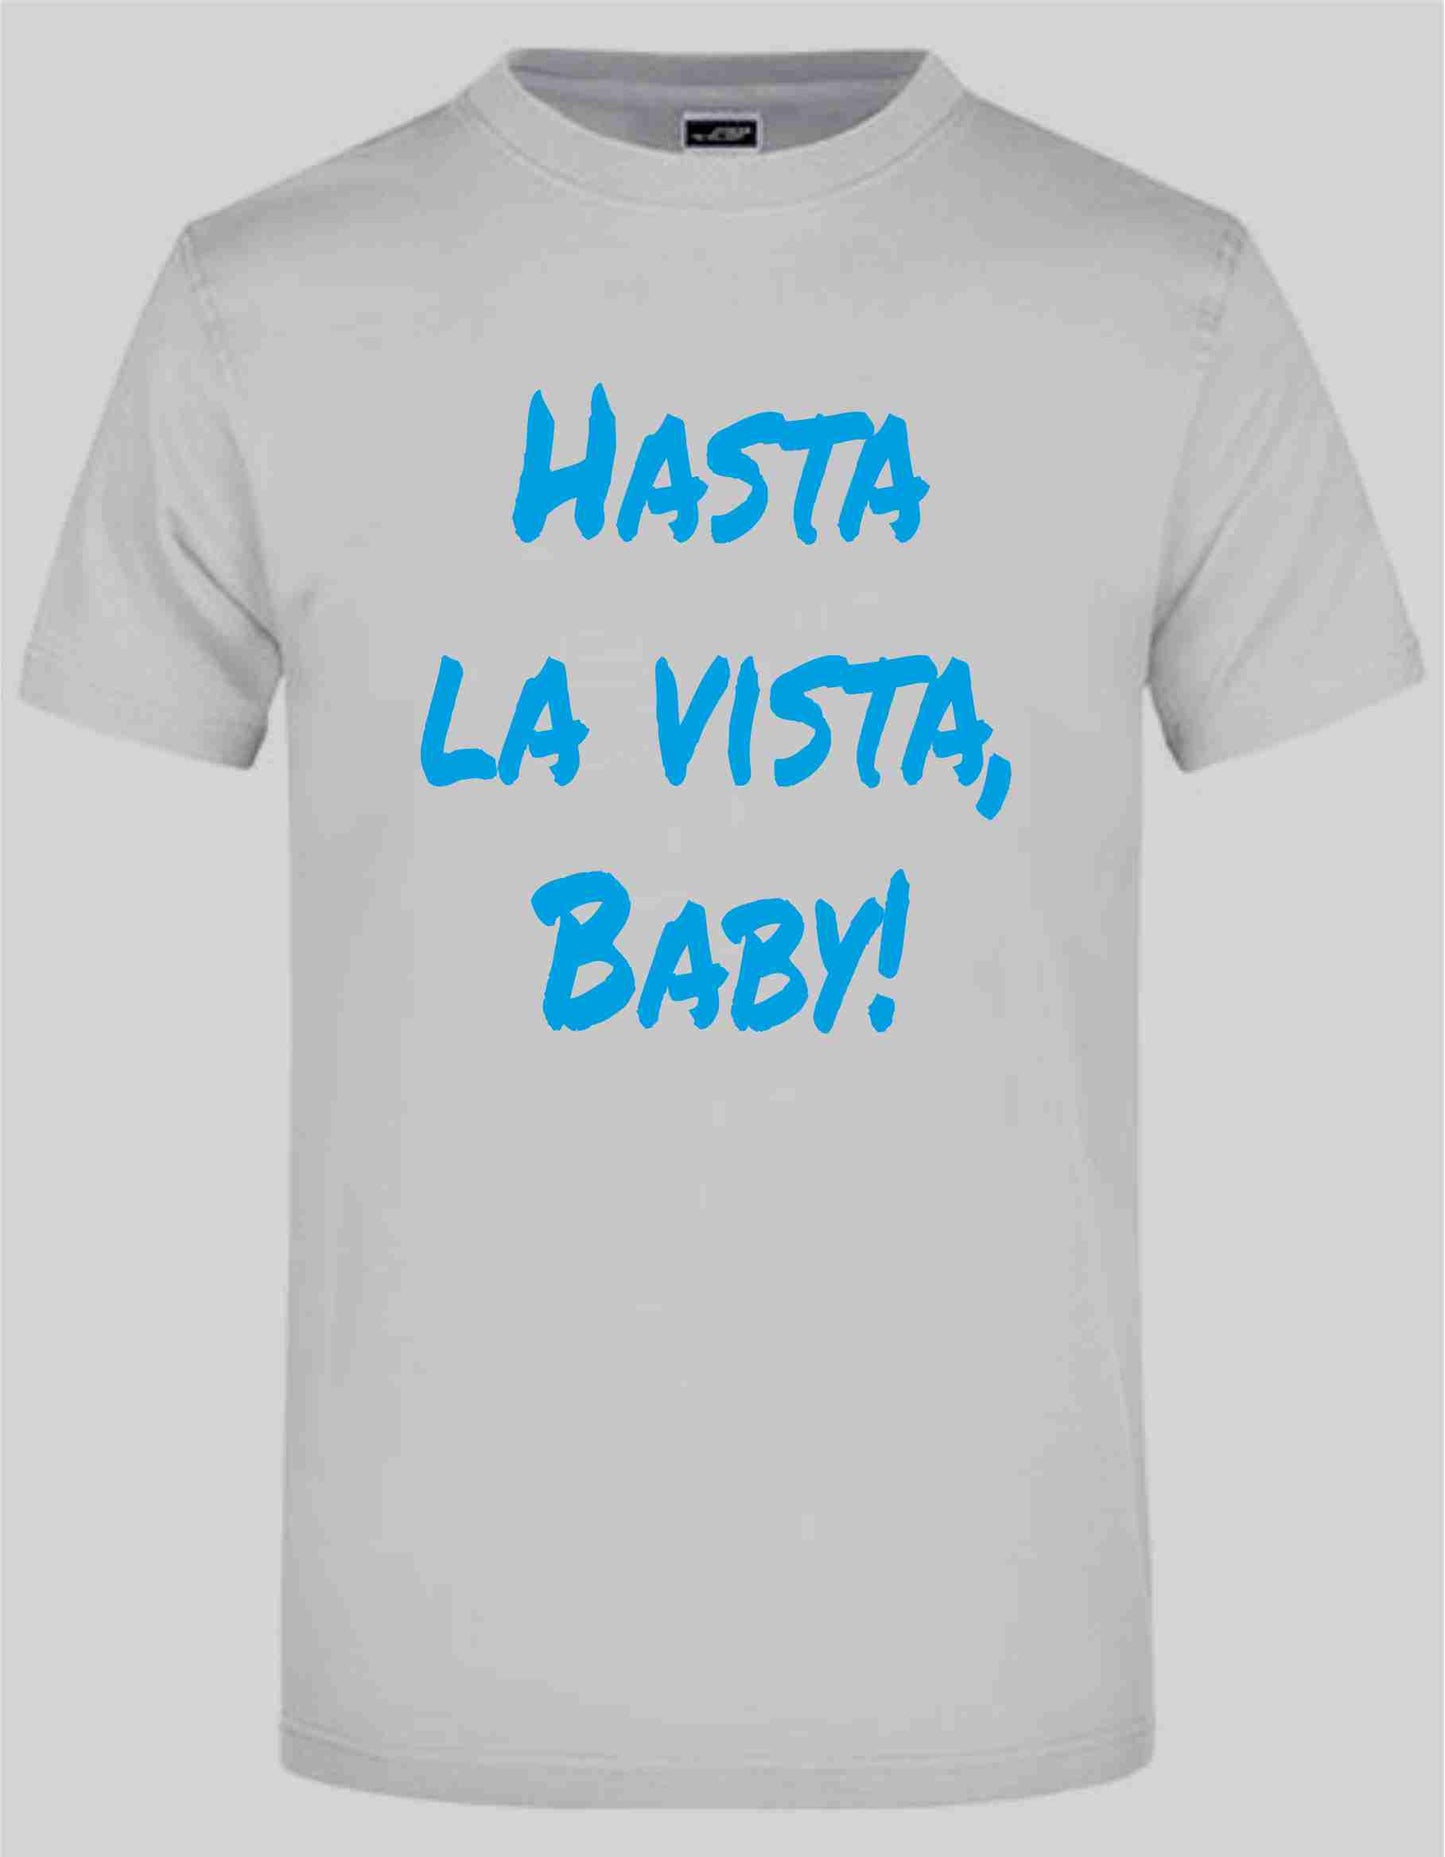 Hasta La Vista T-Shirt